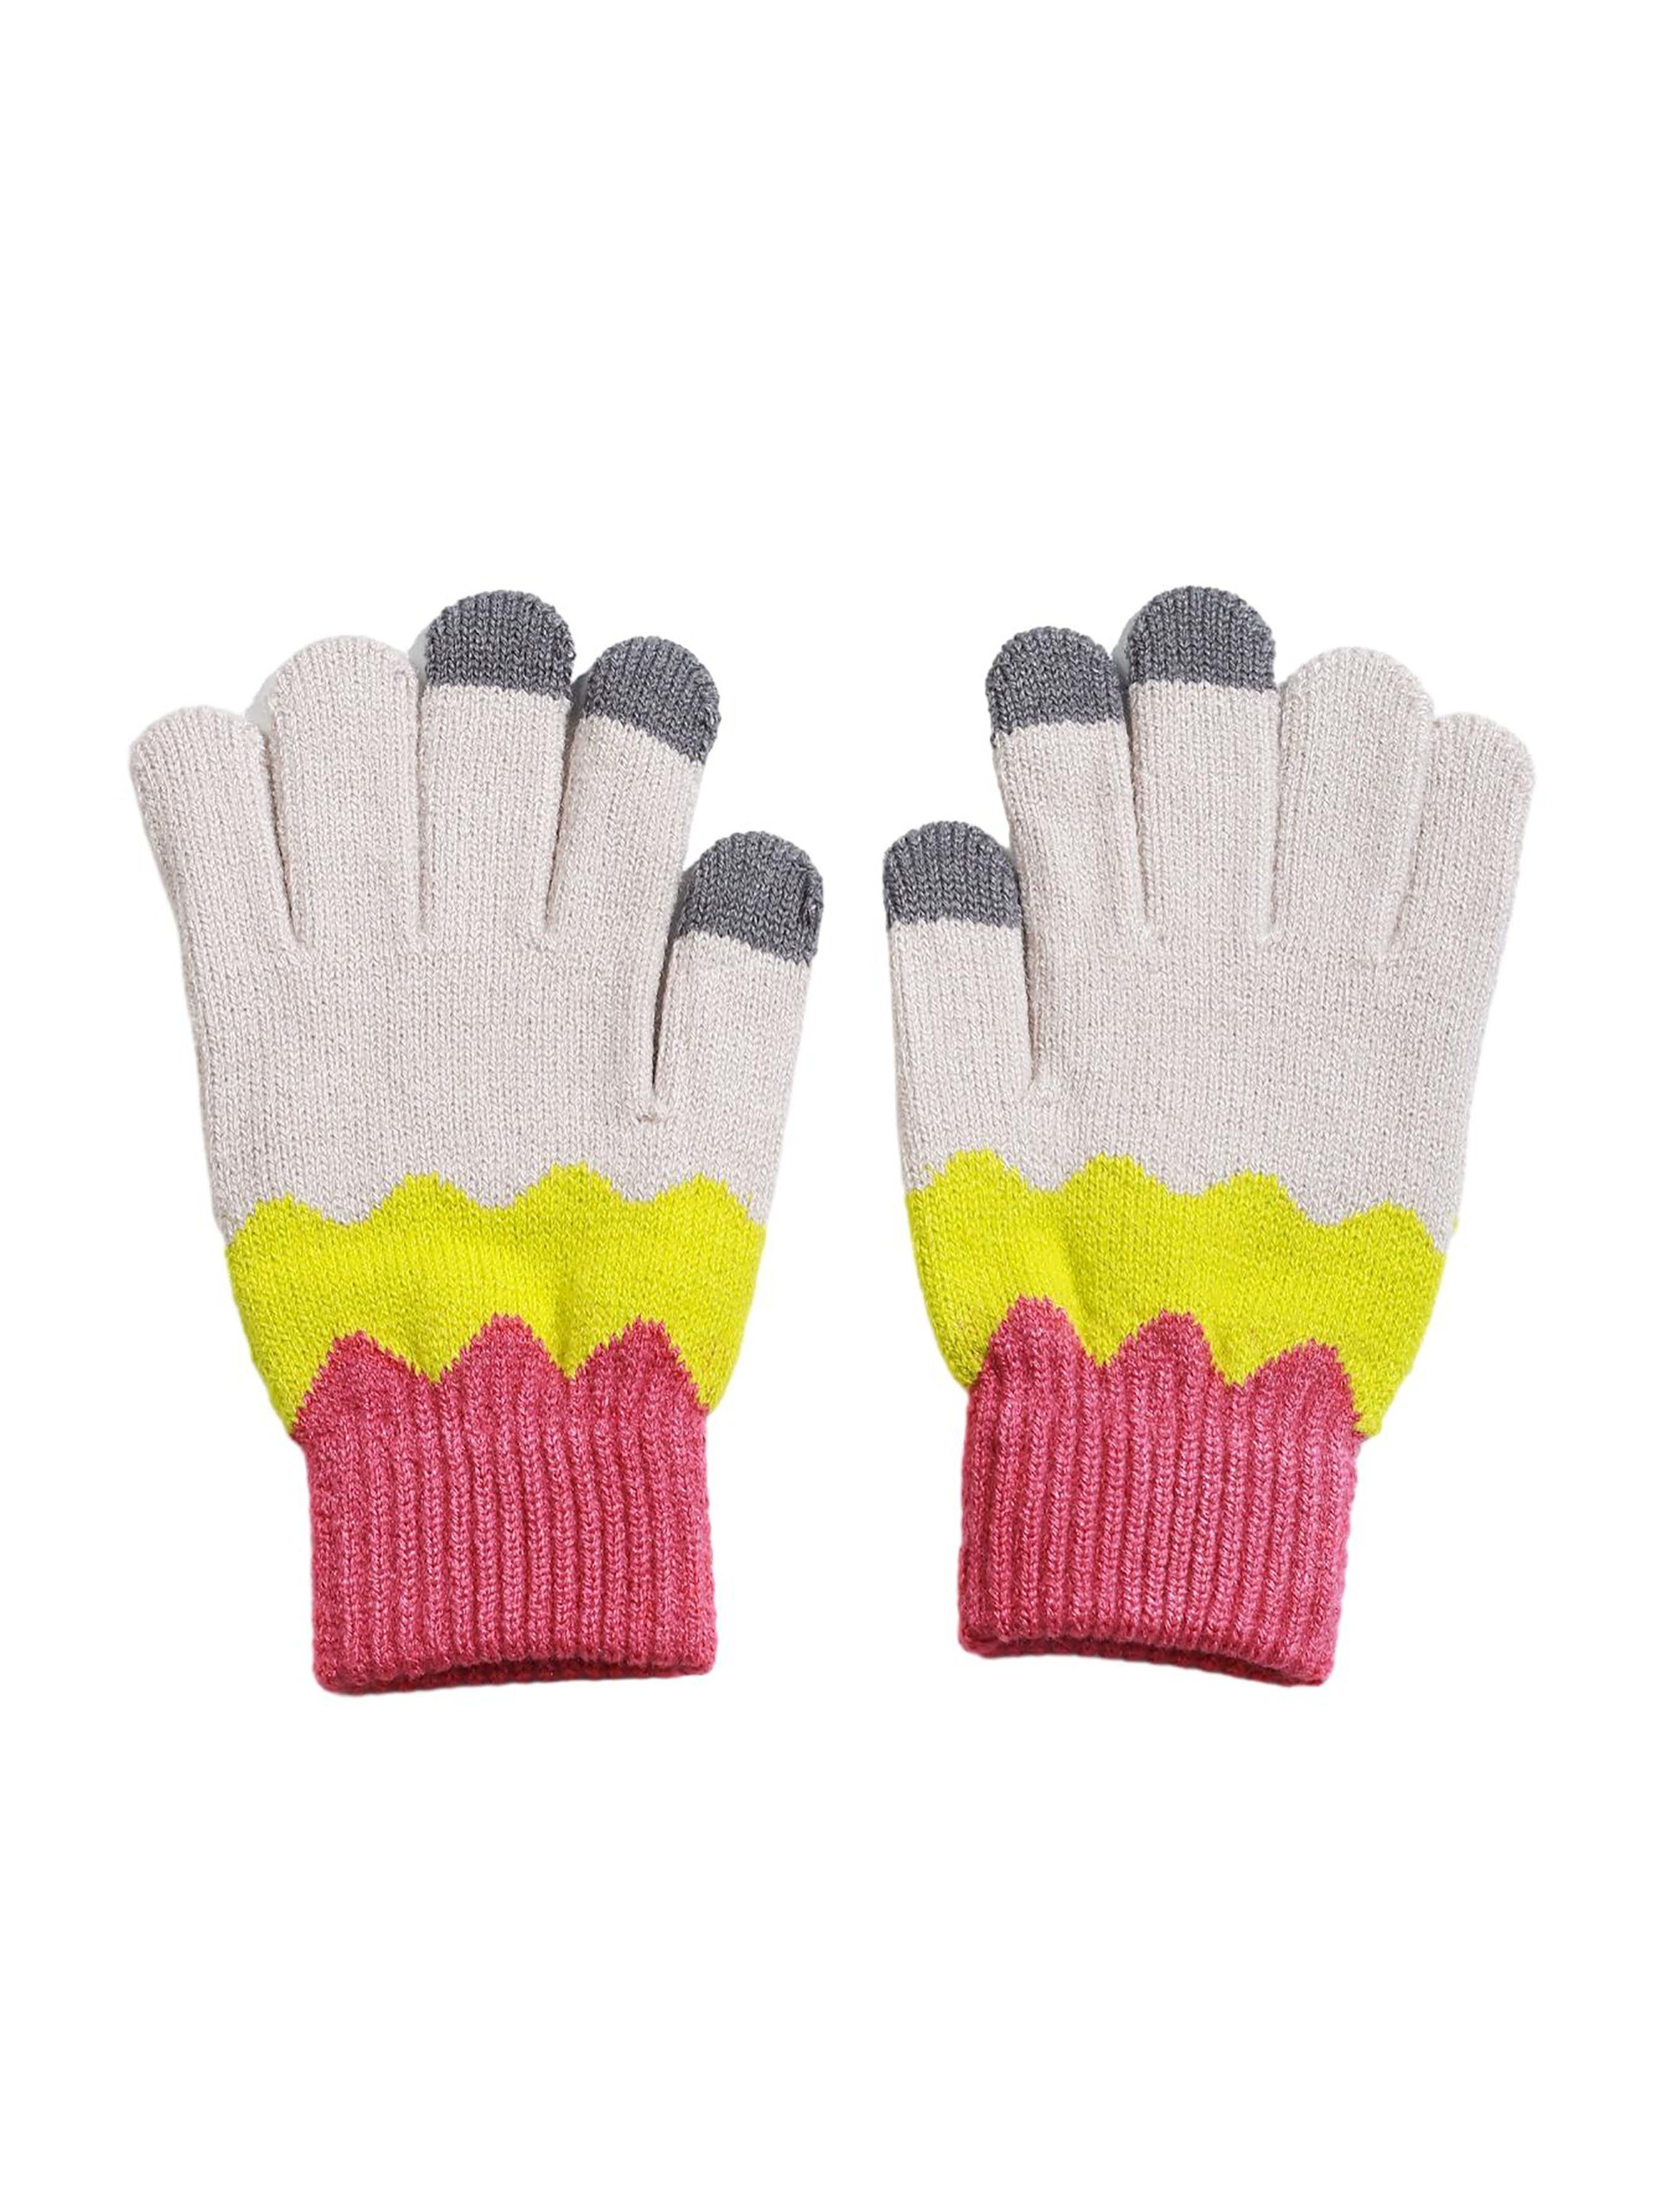 SRRINM Trikot-Handschuhe Wollhandschuhe warm und gepolstert